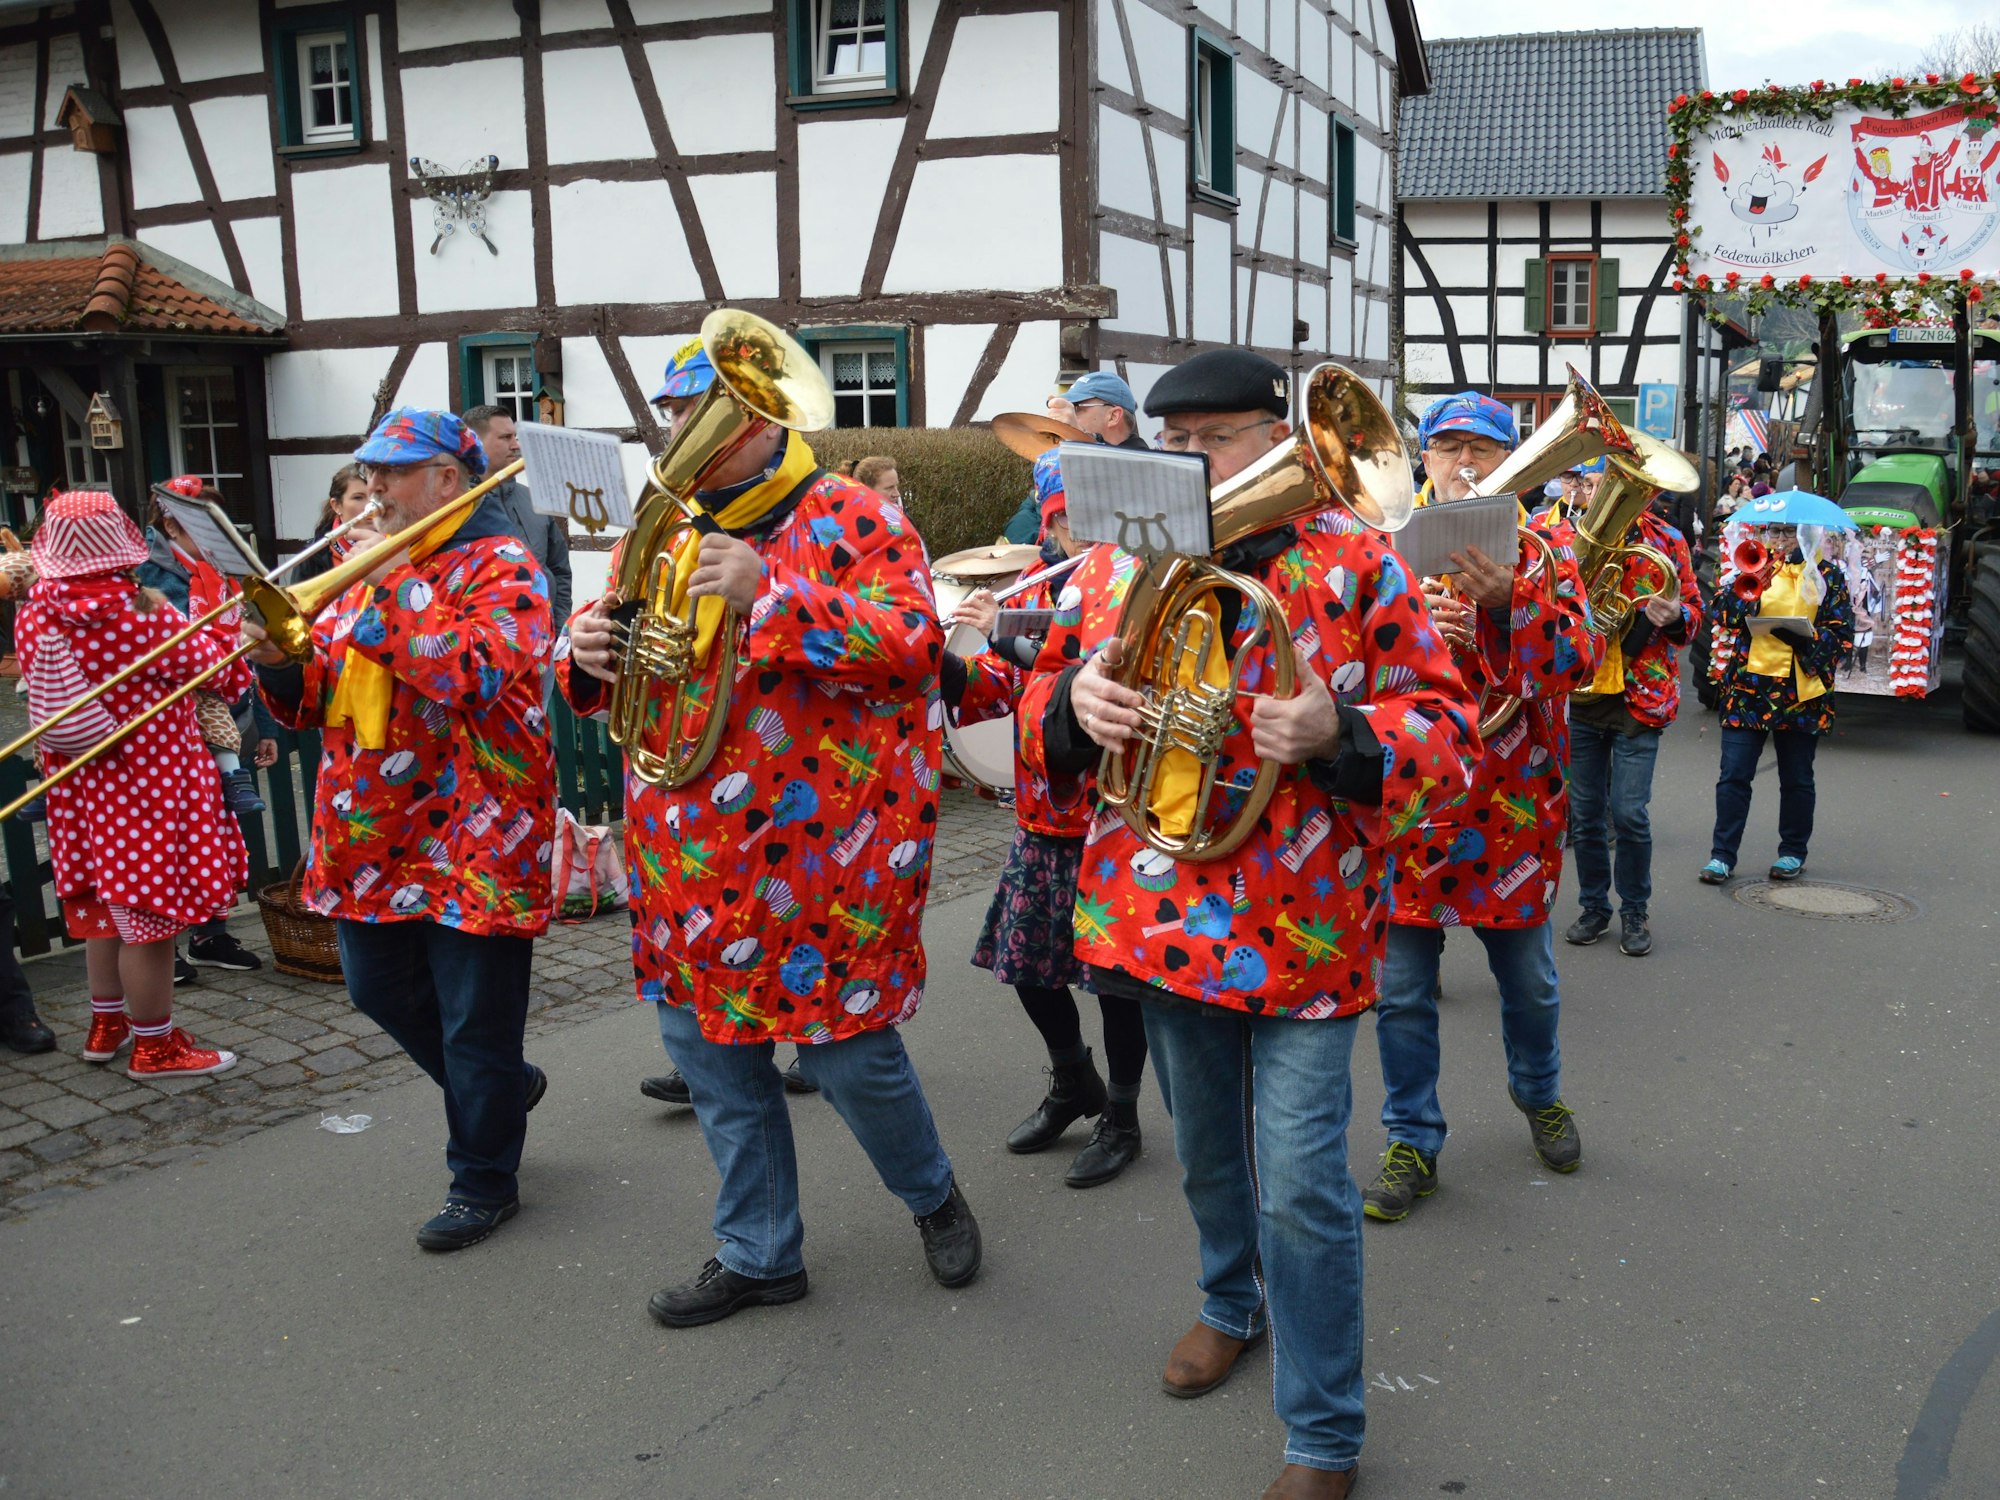 Kölsche Tön und Karnevalslieder spielte die Musikkapelle Kall.